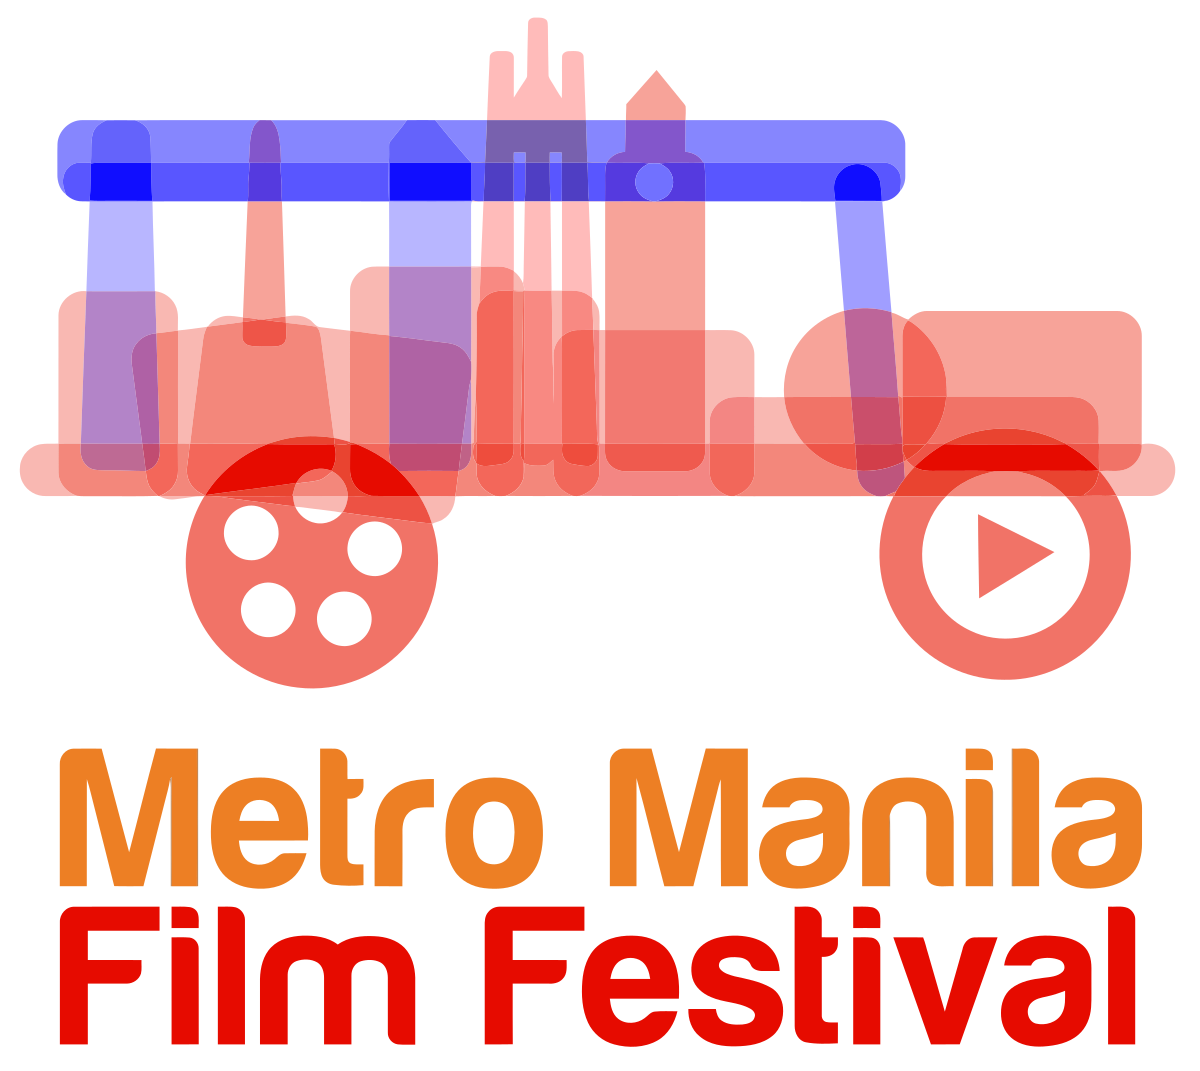 Deleter' sweeps Metro Manila Film Festival 2022